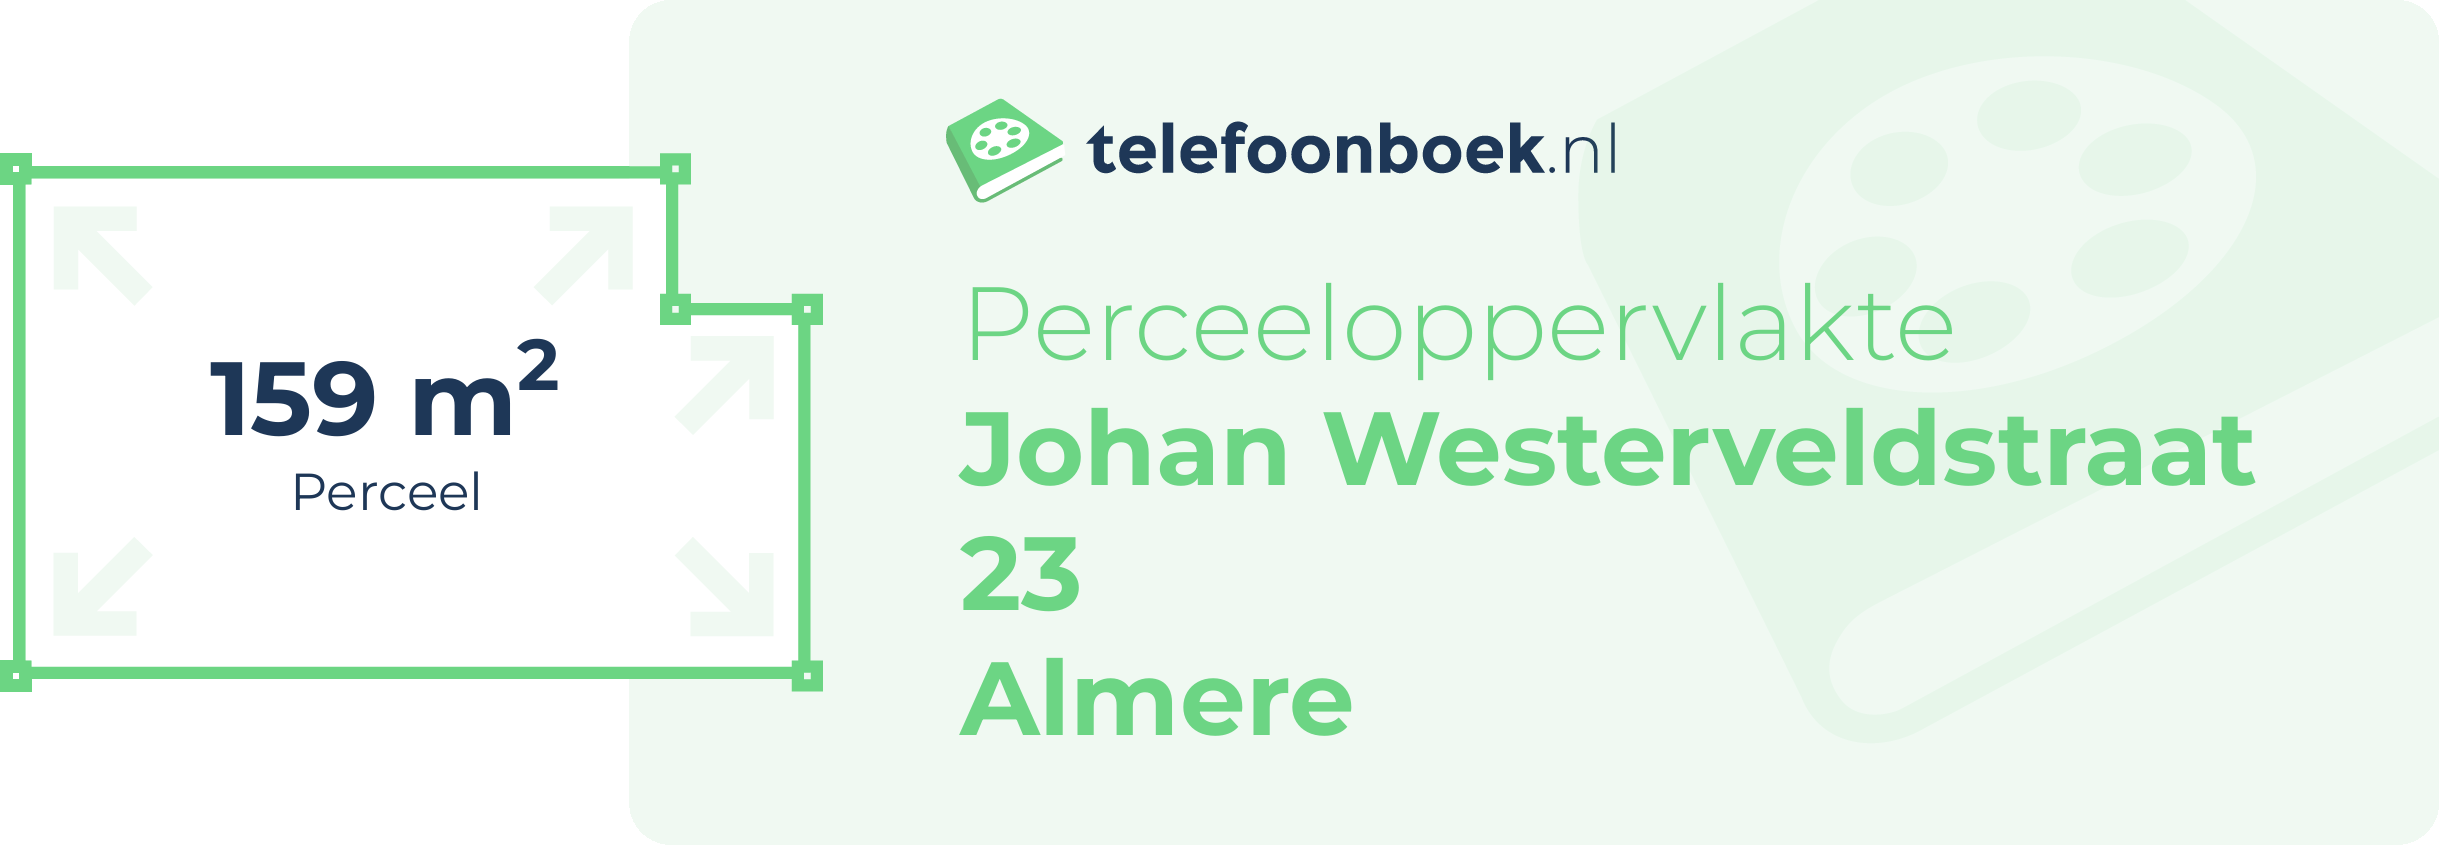 Perceeloppervlakte Johan Westerveldstraat 23 Almere